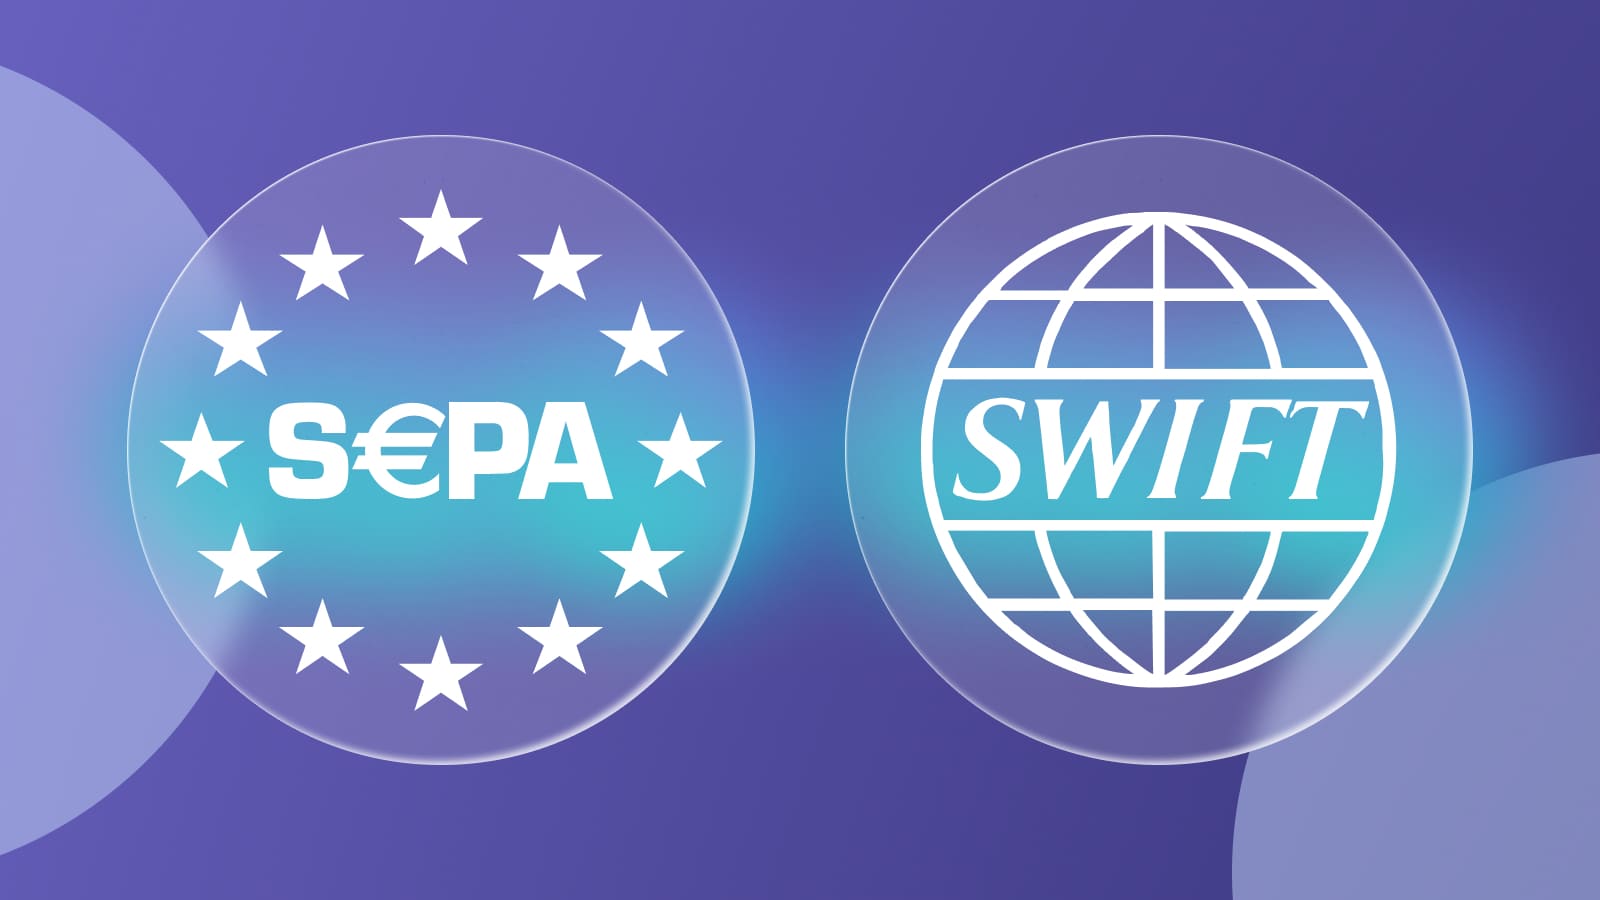 У международной платежной системы SWIFT и SEPA есть несколько отличий.